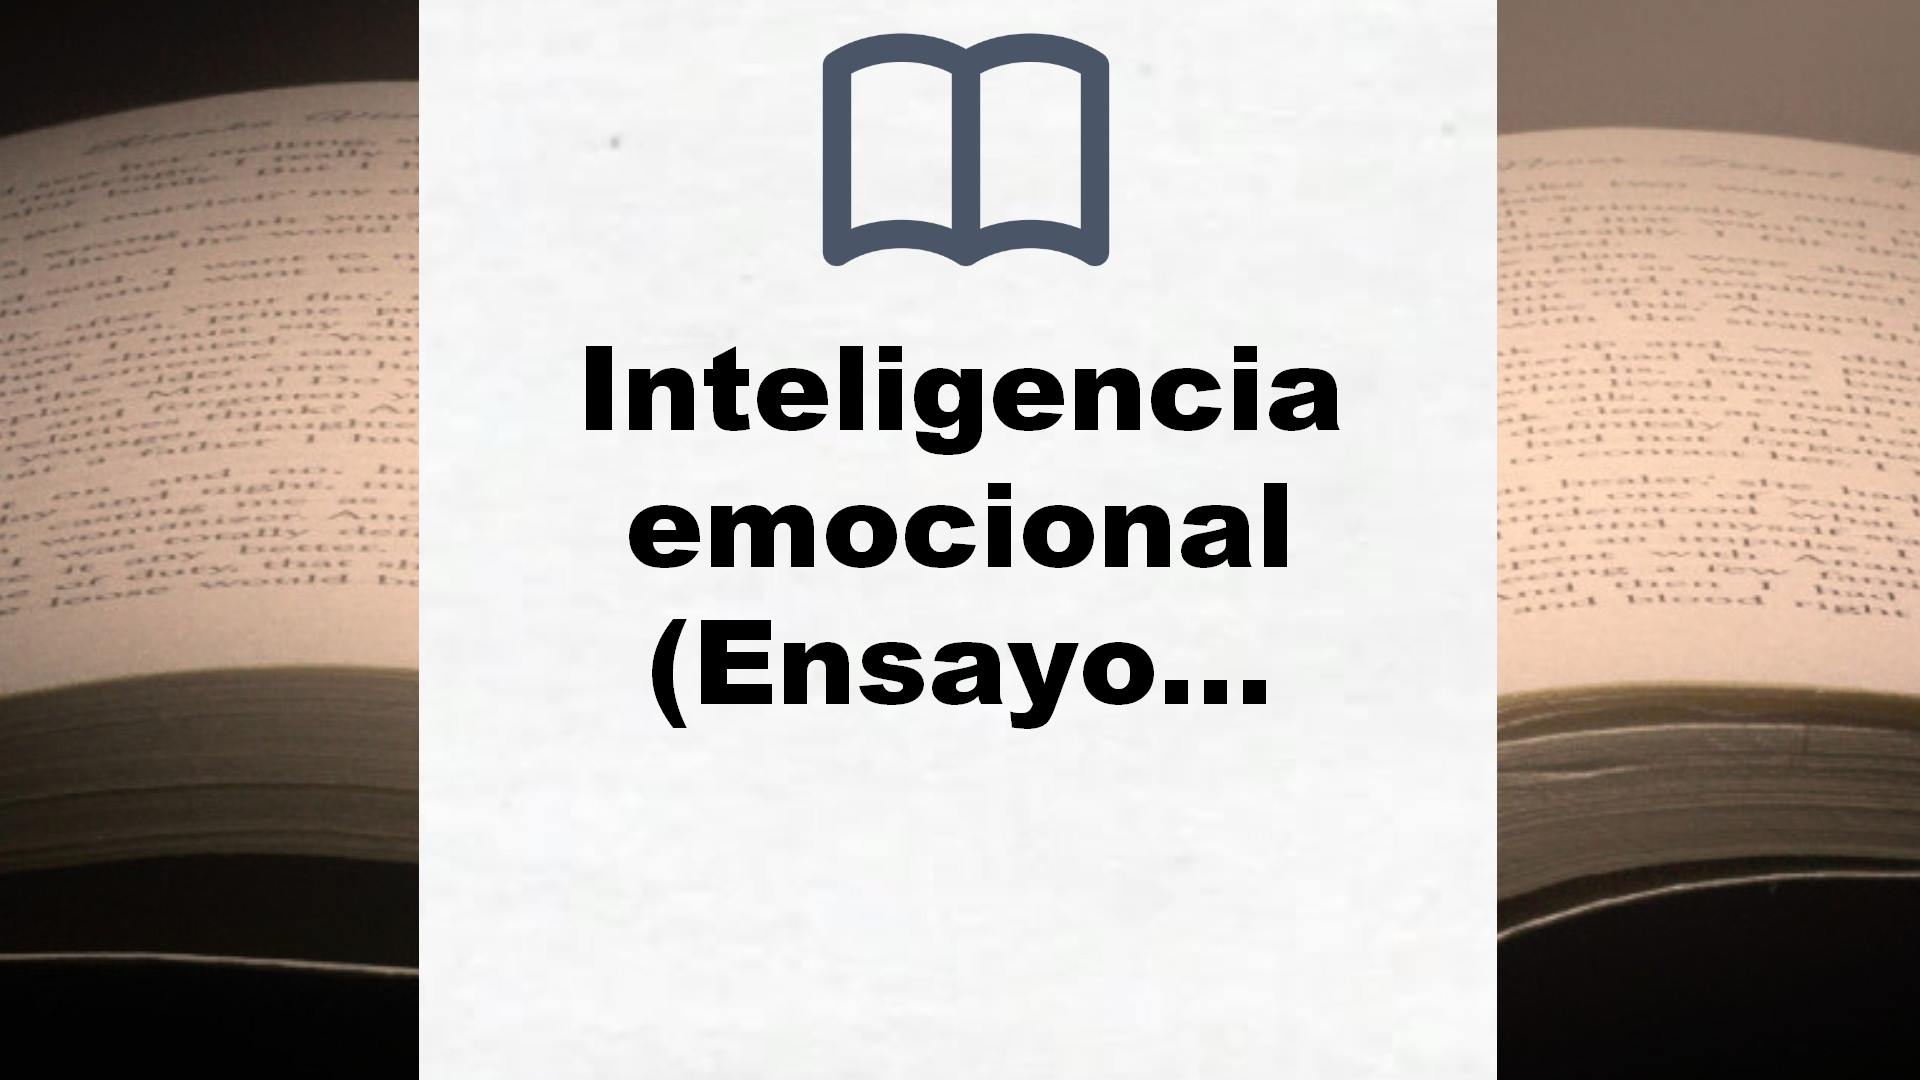 Inteligencia emocional (Ensayo) – Reseña del libro